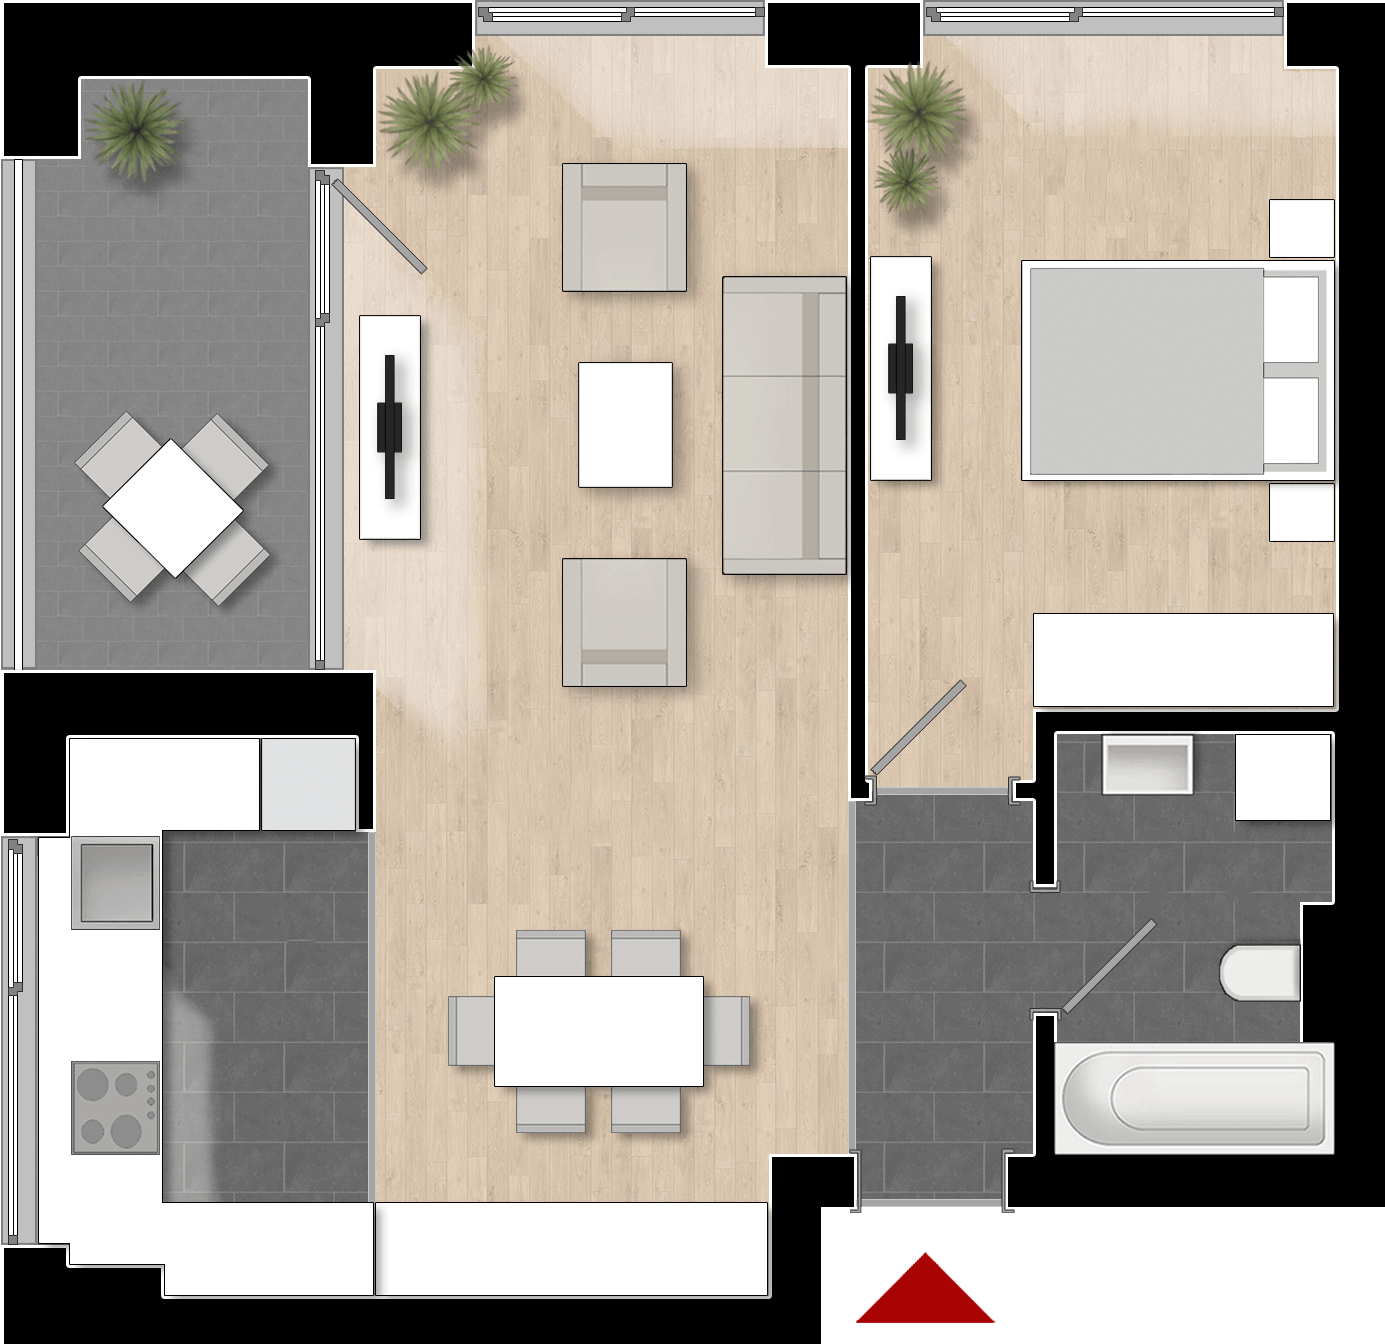  Apartament 404, Tip de apartament 2B cu 2 camere 